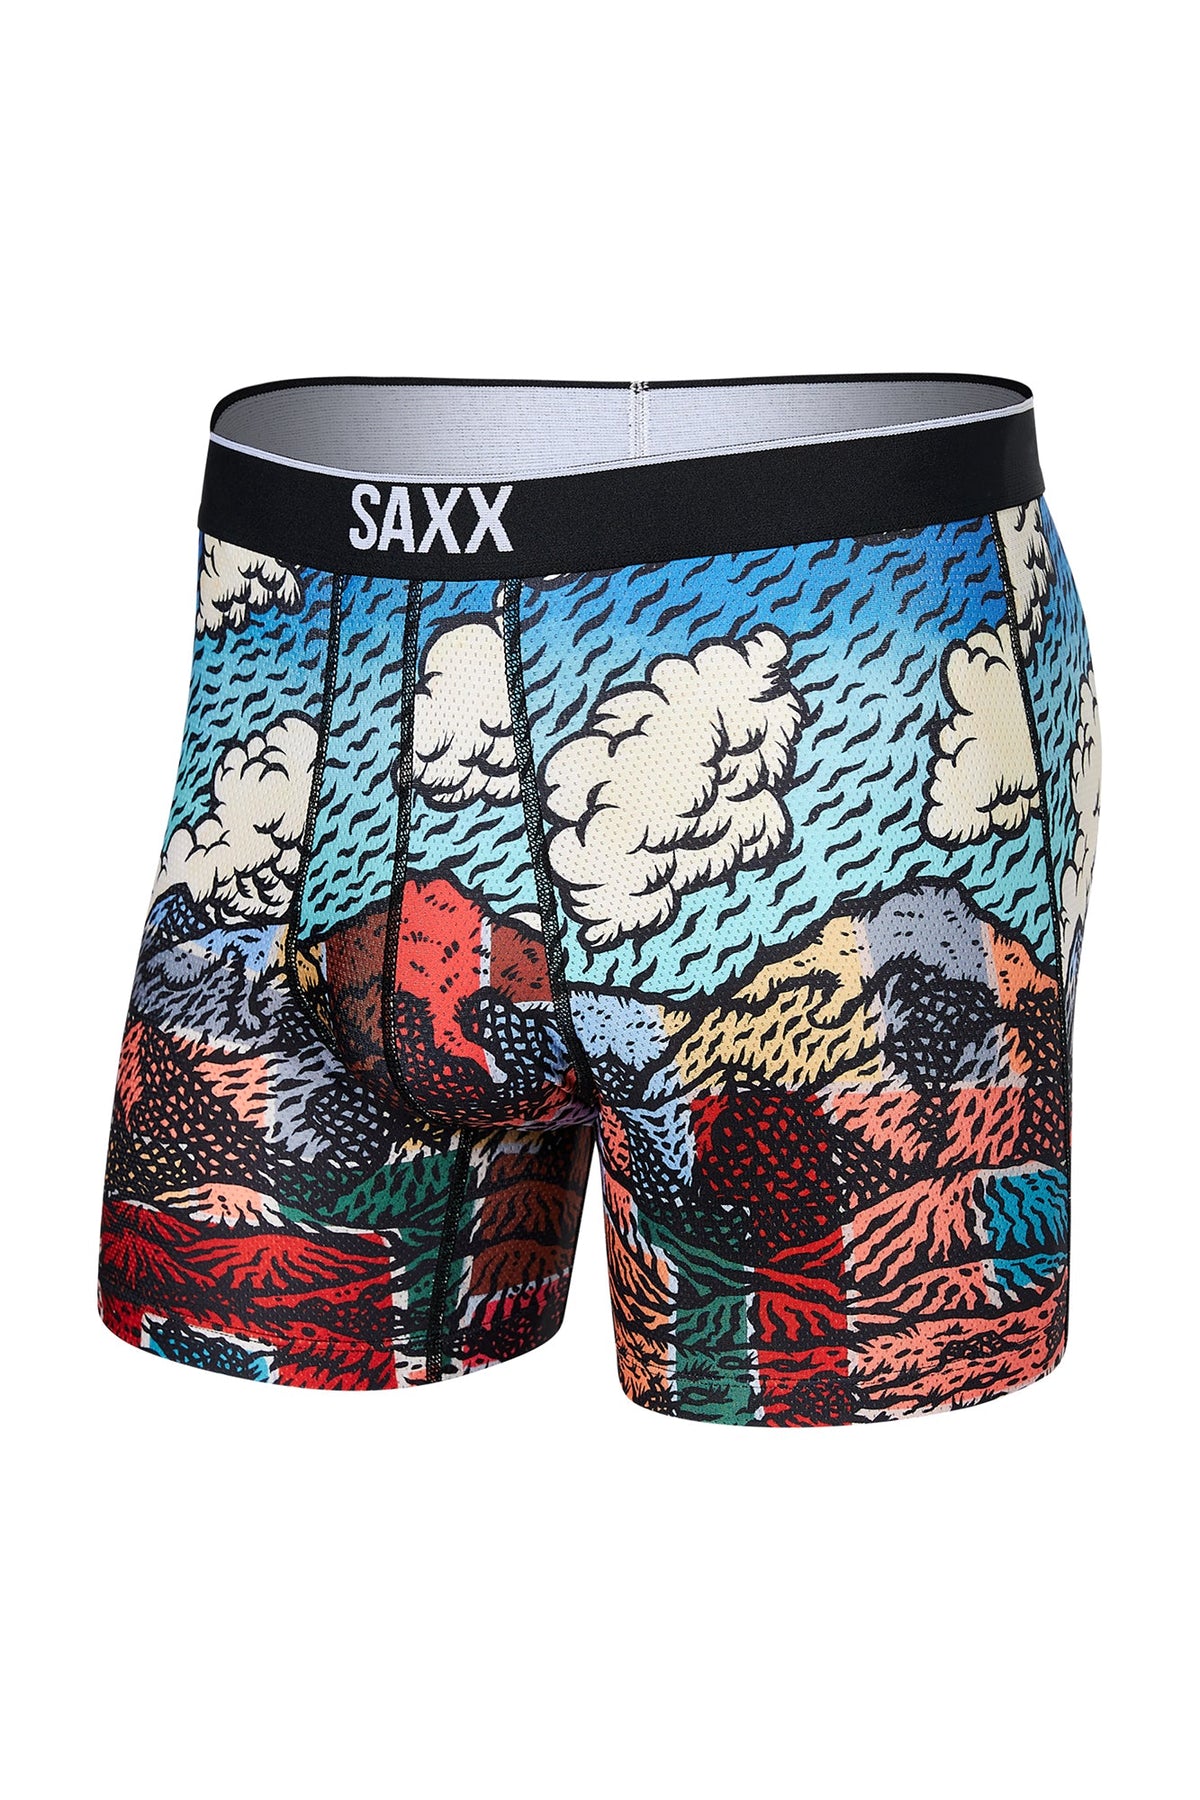 Boxer pour homme par Saxx | Volt SXBB29 CNM | Machemise.ca, vêtements mode pour hommes